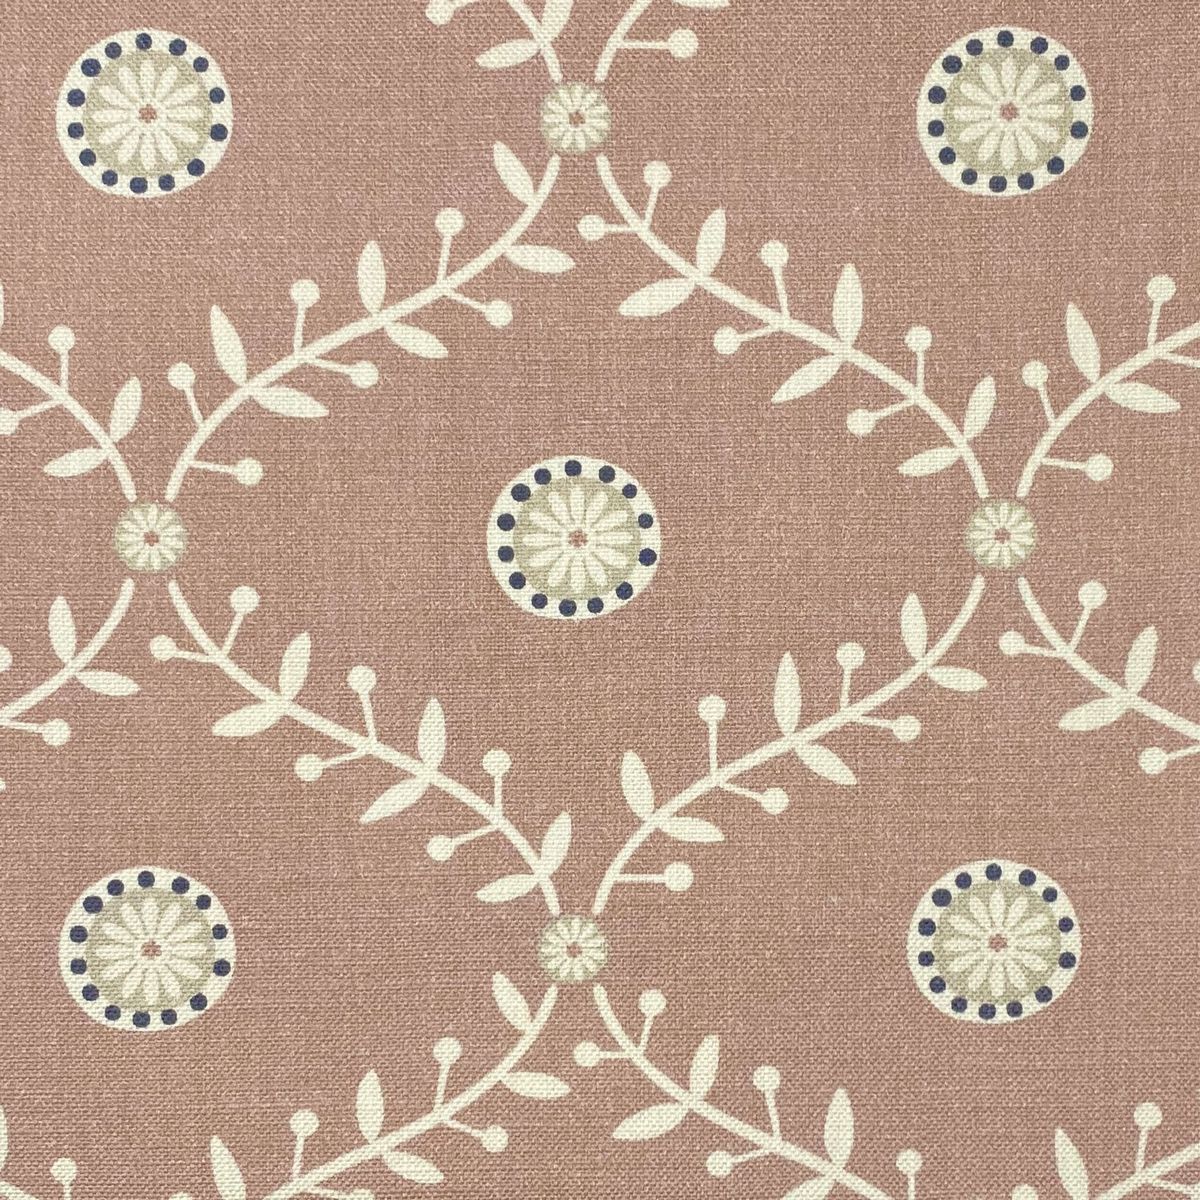 Bluntington Blush Fabric by Chatham Glyn